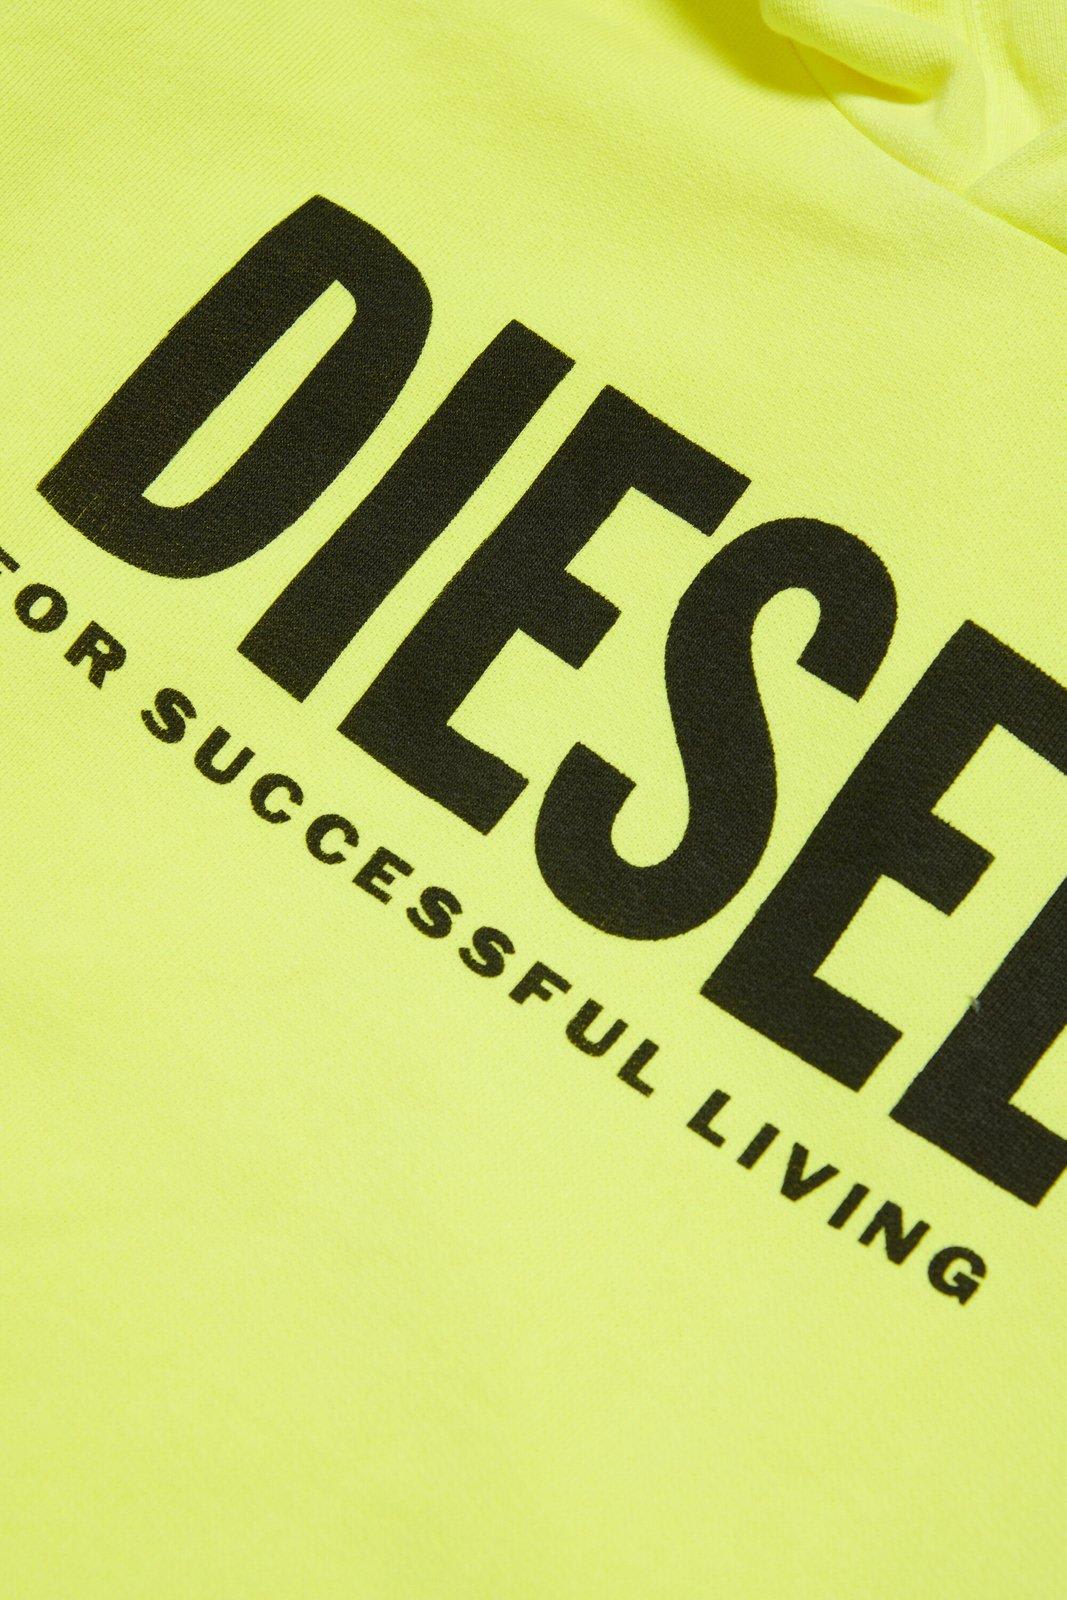 Shop Diesel Snucihood Over Logo Printed Hoodie